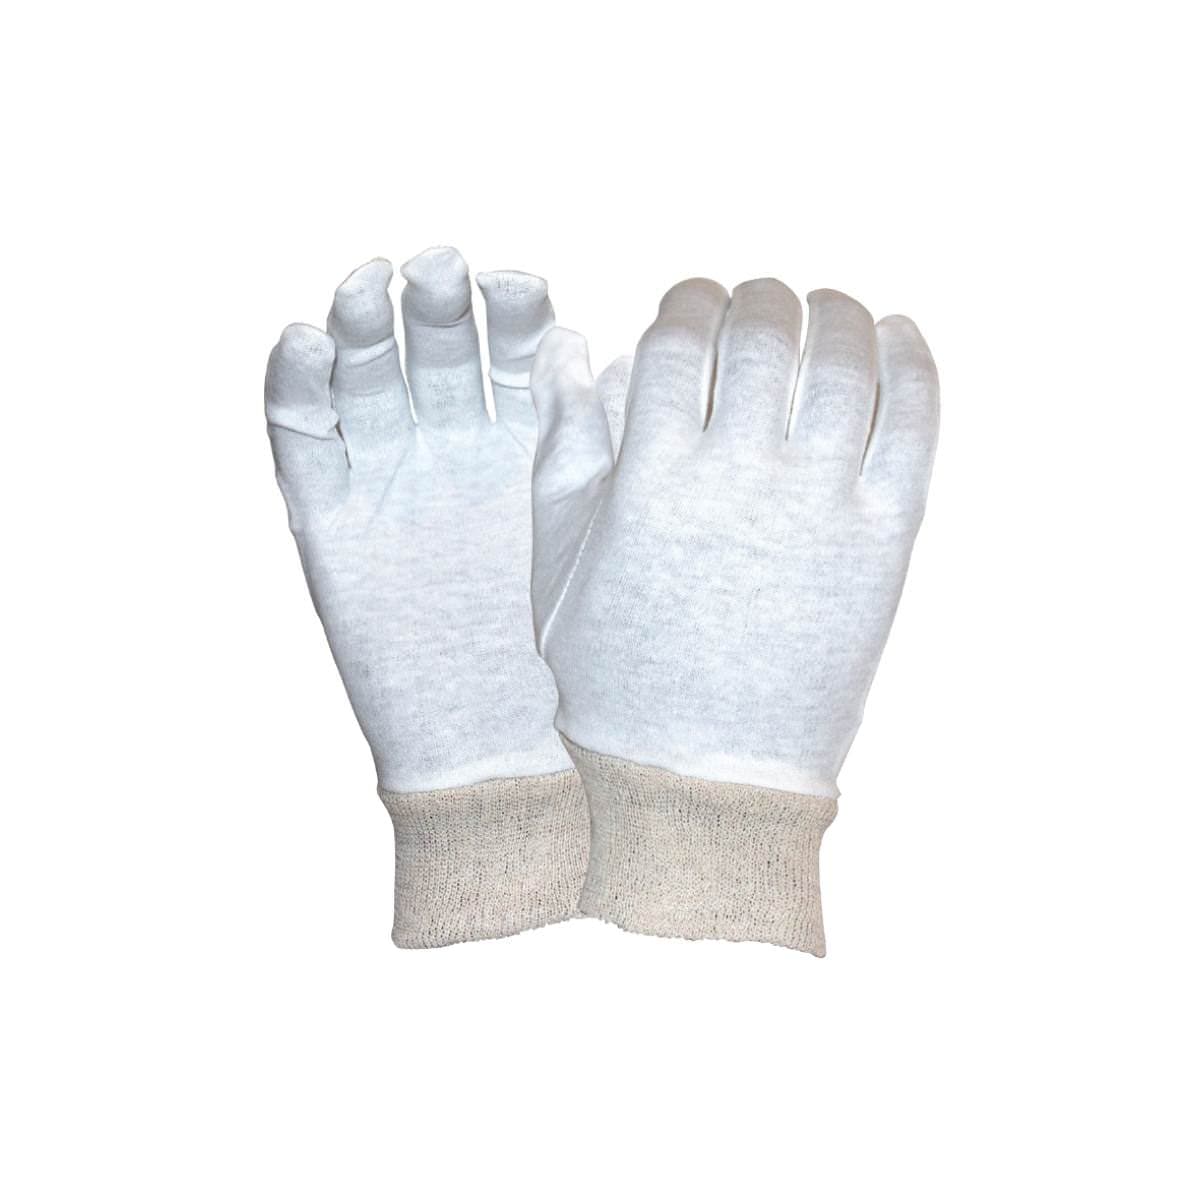 SafeRite® Interlock Ladies Knit Wrist Glove SR212WK (Pack of 12)